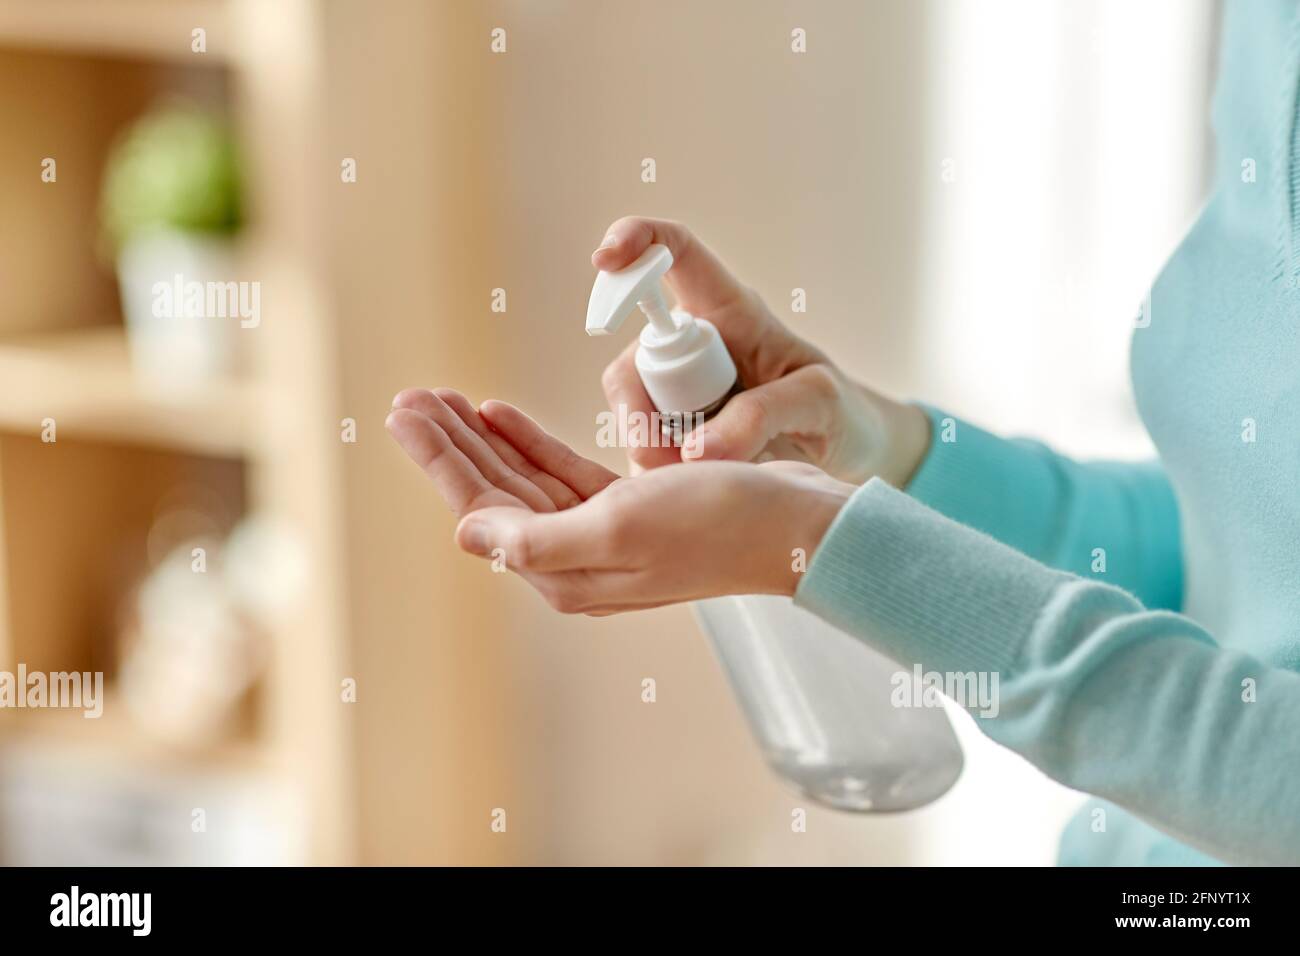 primo piano di donna che applica l'igienizzatore per le mani Foto Stock